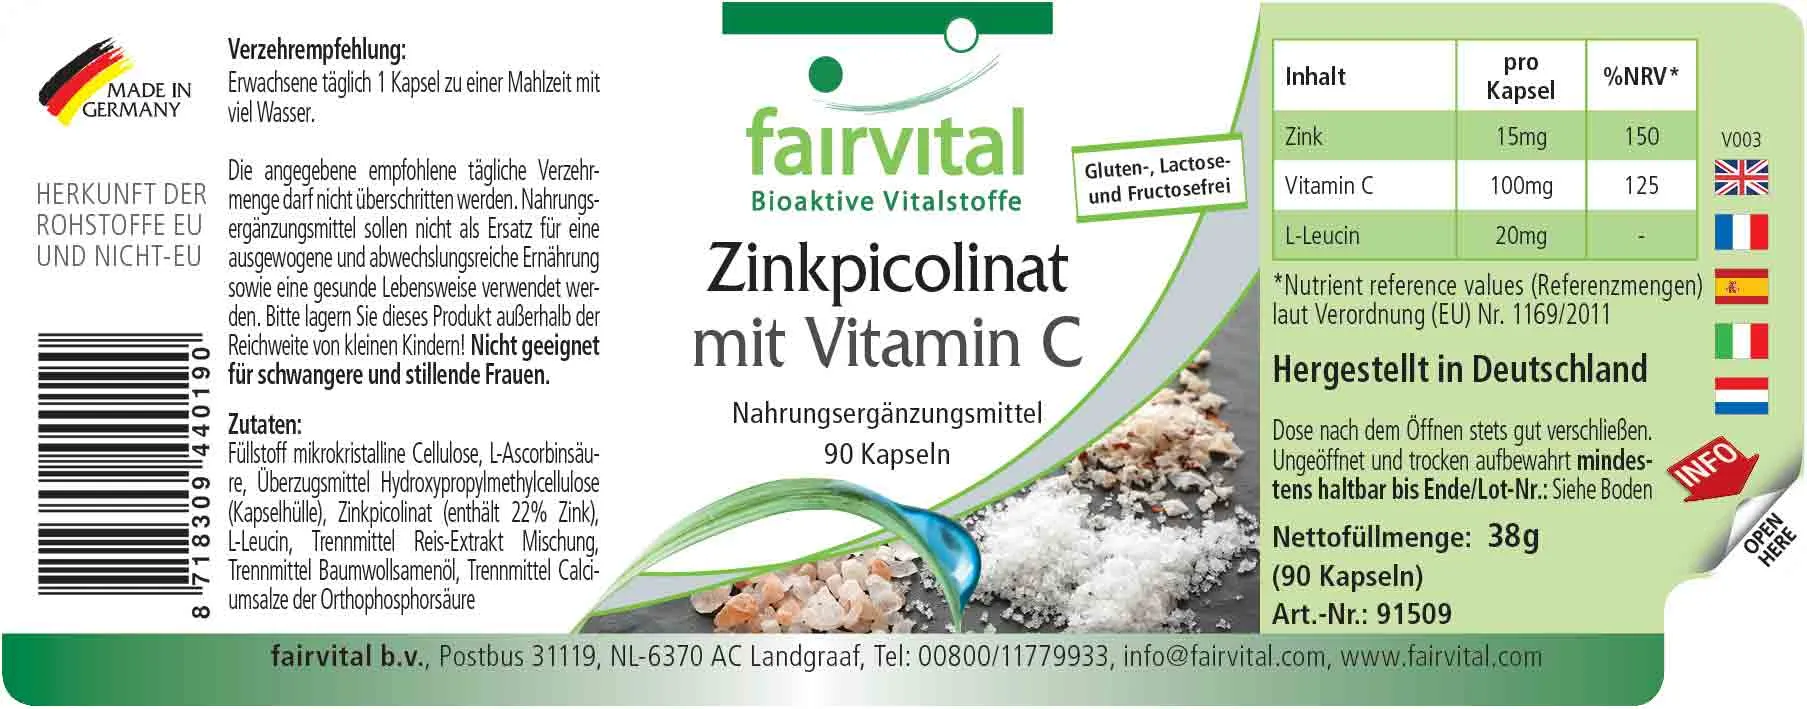 Zinkpicolinat mit Vitamin C